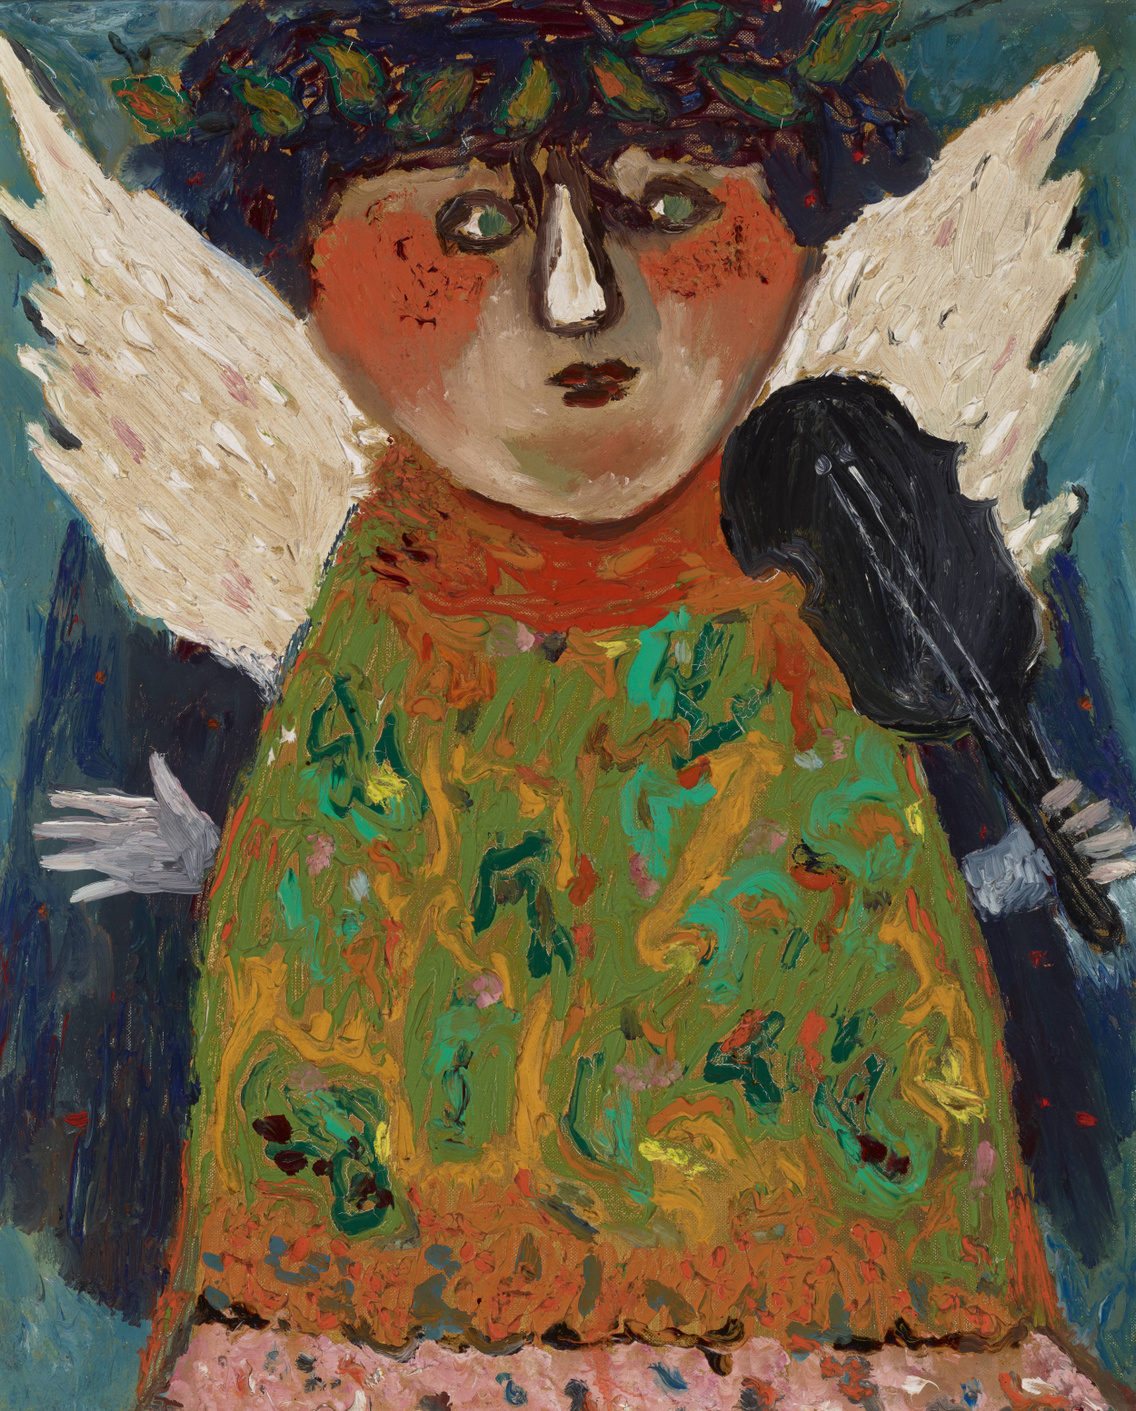 Anna Margit: Angyal, 1968, olaj, vászon, 51×41 cm, Kolozsváry-gyűjtemény, Győr